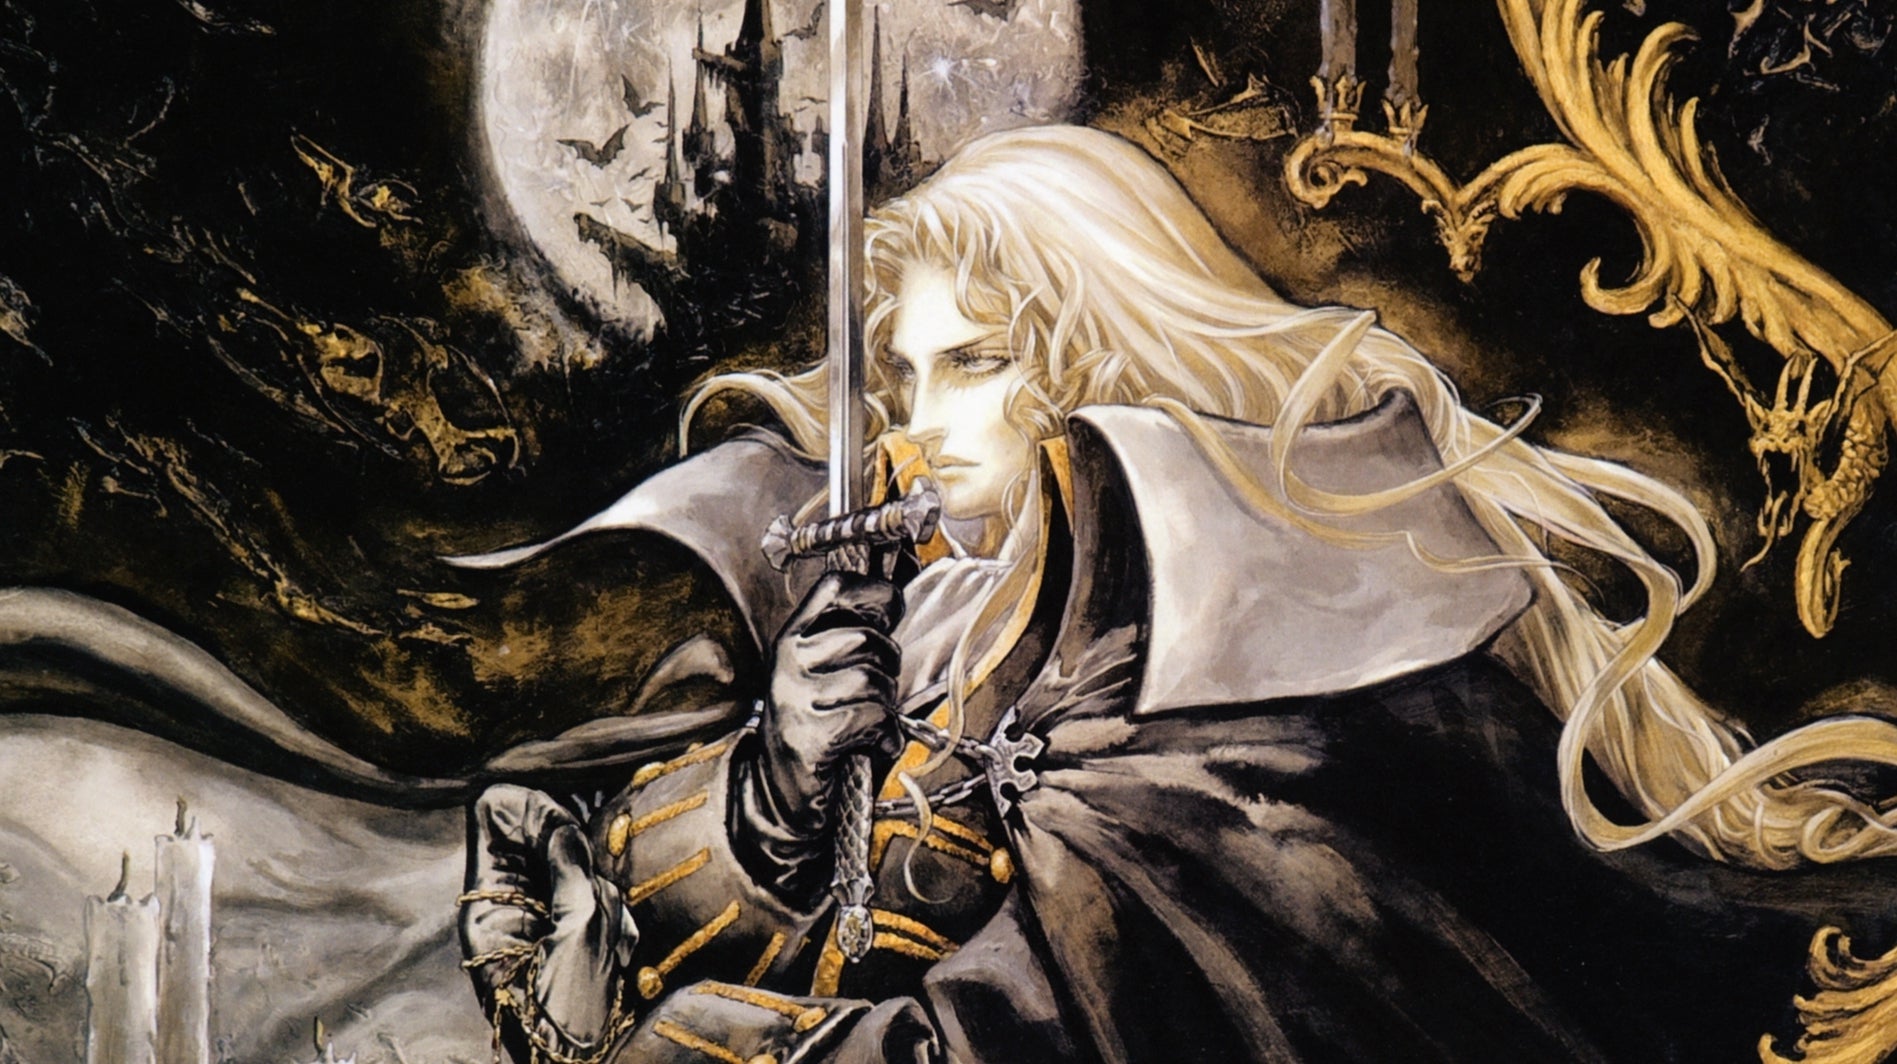 Afbeeldingen van Castlevania Requiem voor de PlayStation 4 onthuld